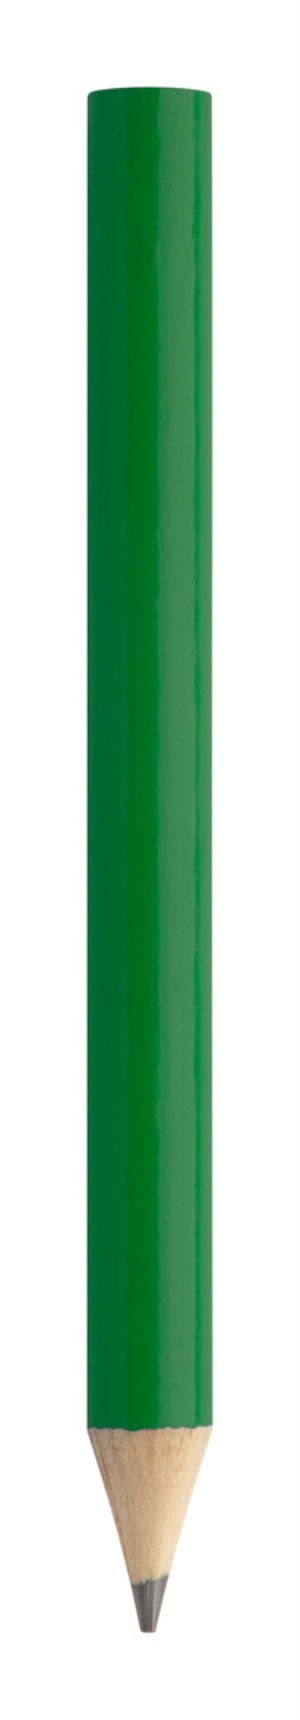 Mini ceruzka Mercia, zelená